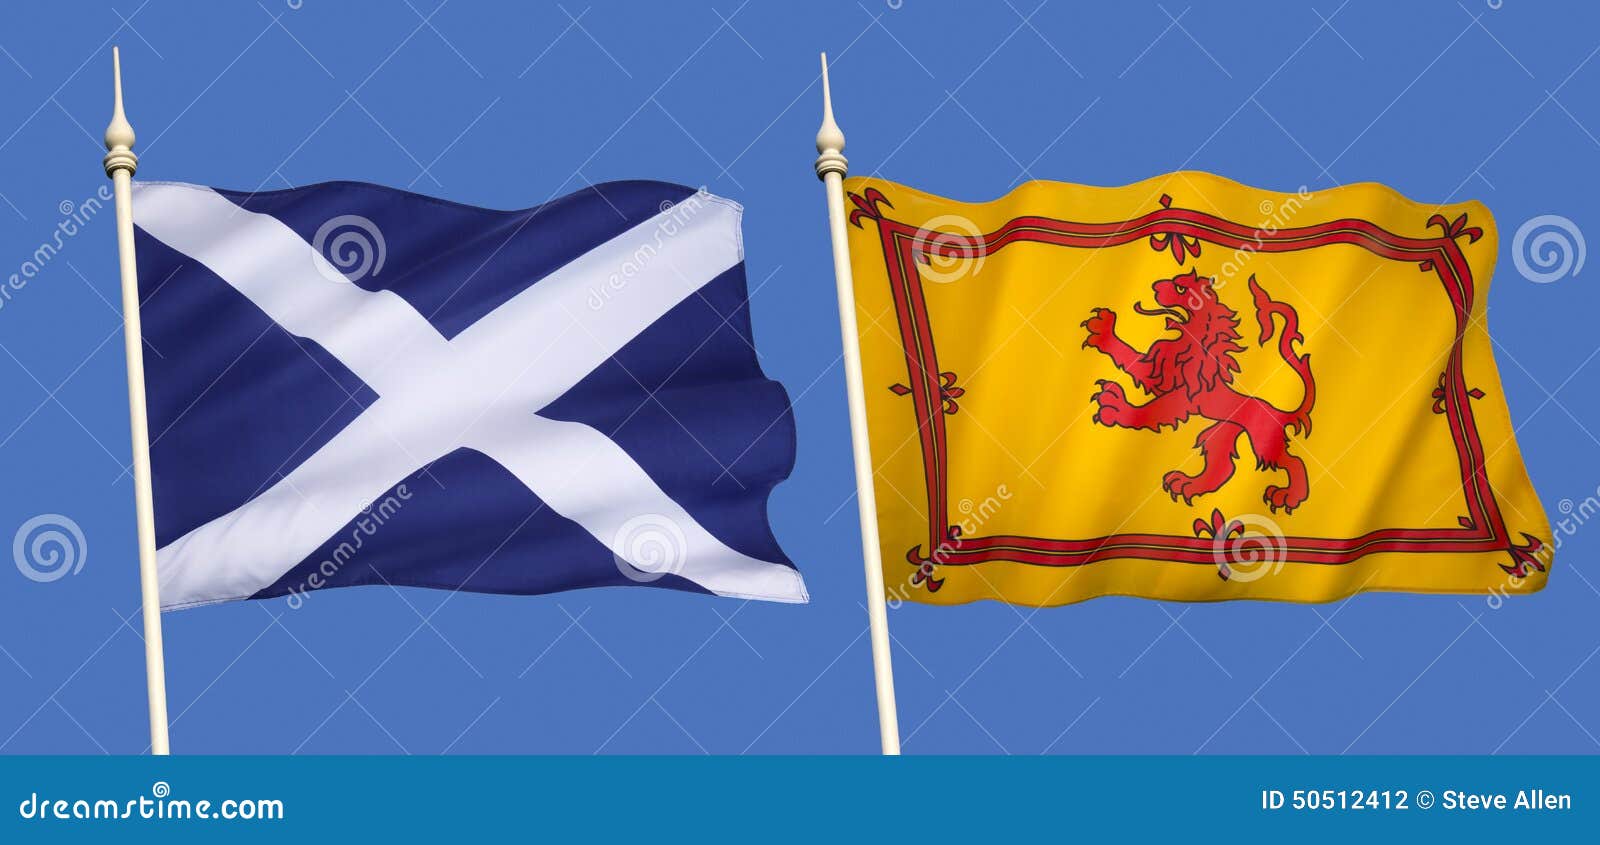 single Escocia bandera escocesa Interruptor De Luz pegatina de vinilo Cover Skin 